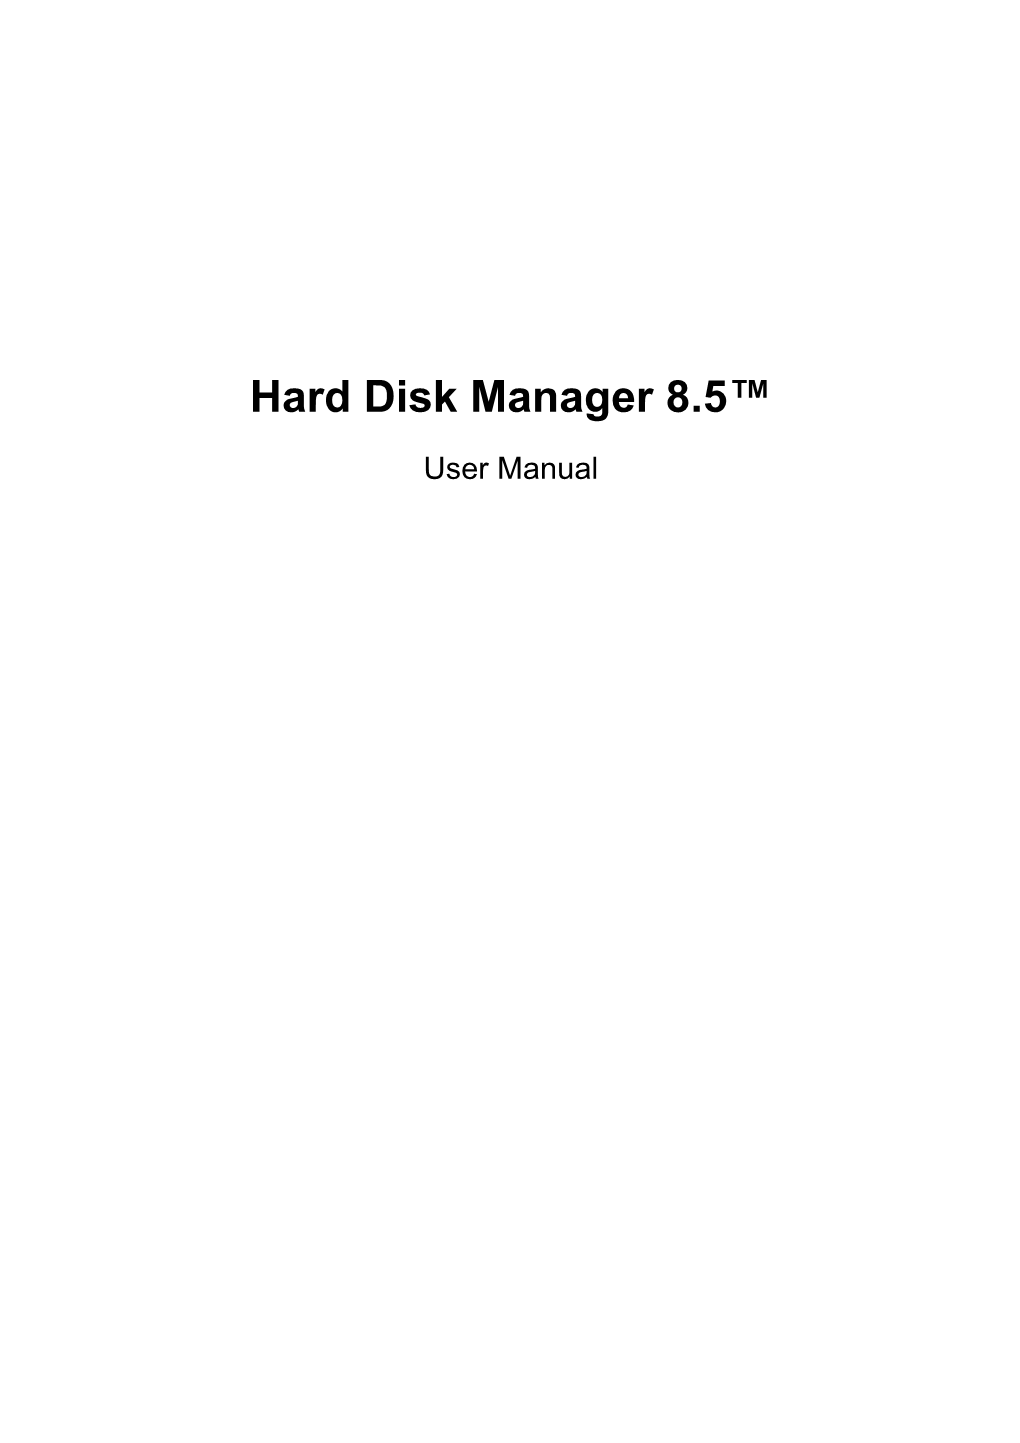 Hard Disk Manager 8.5 Help